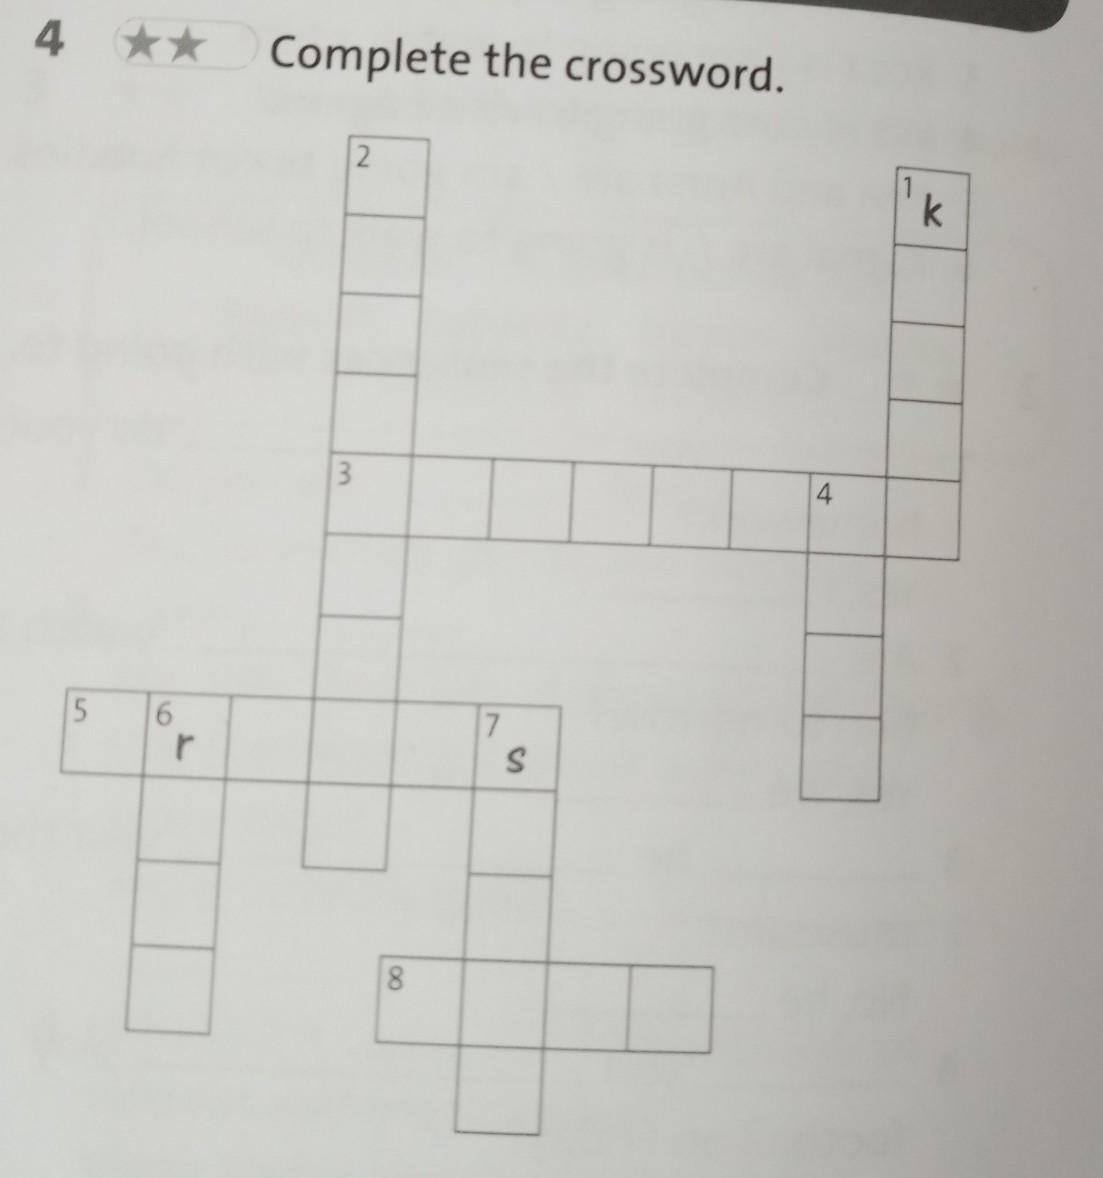 1 Complete the crossword. Complete the crossword. Down across. Complete the crossword 5 класс down. Complete the crossword one. 4 complete the crossword